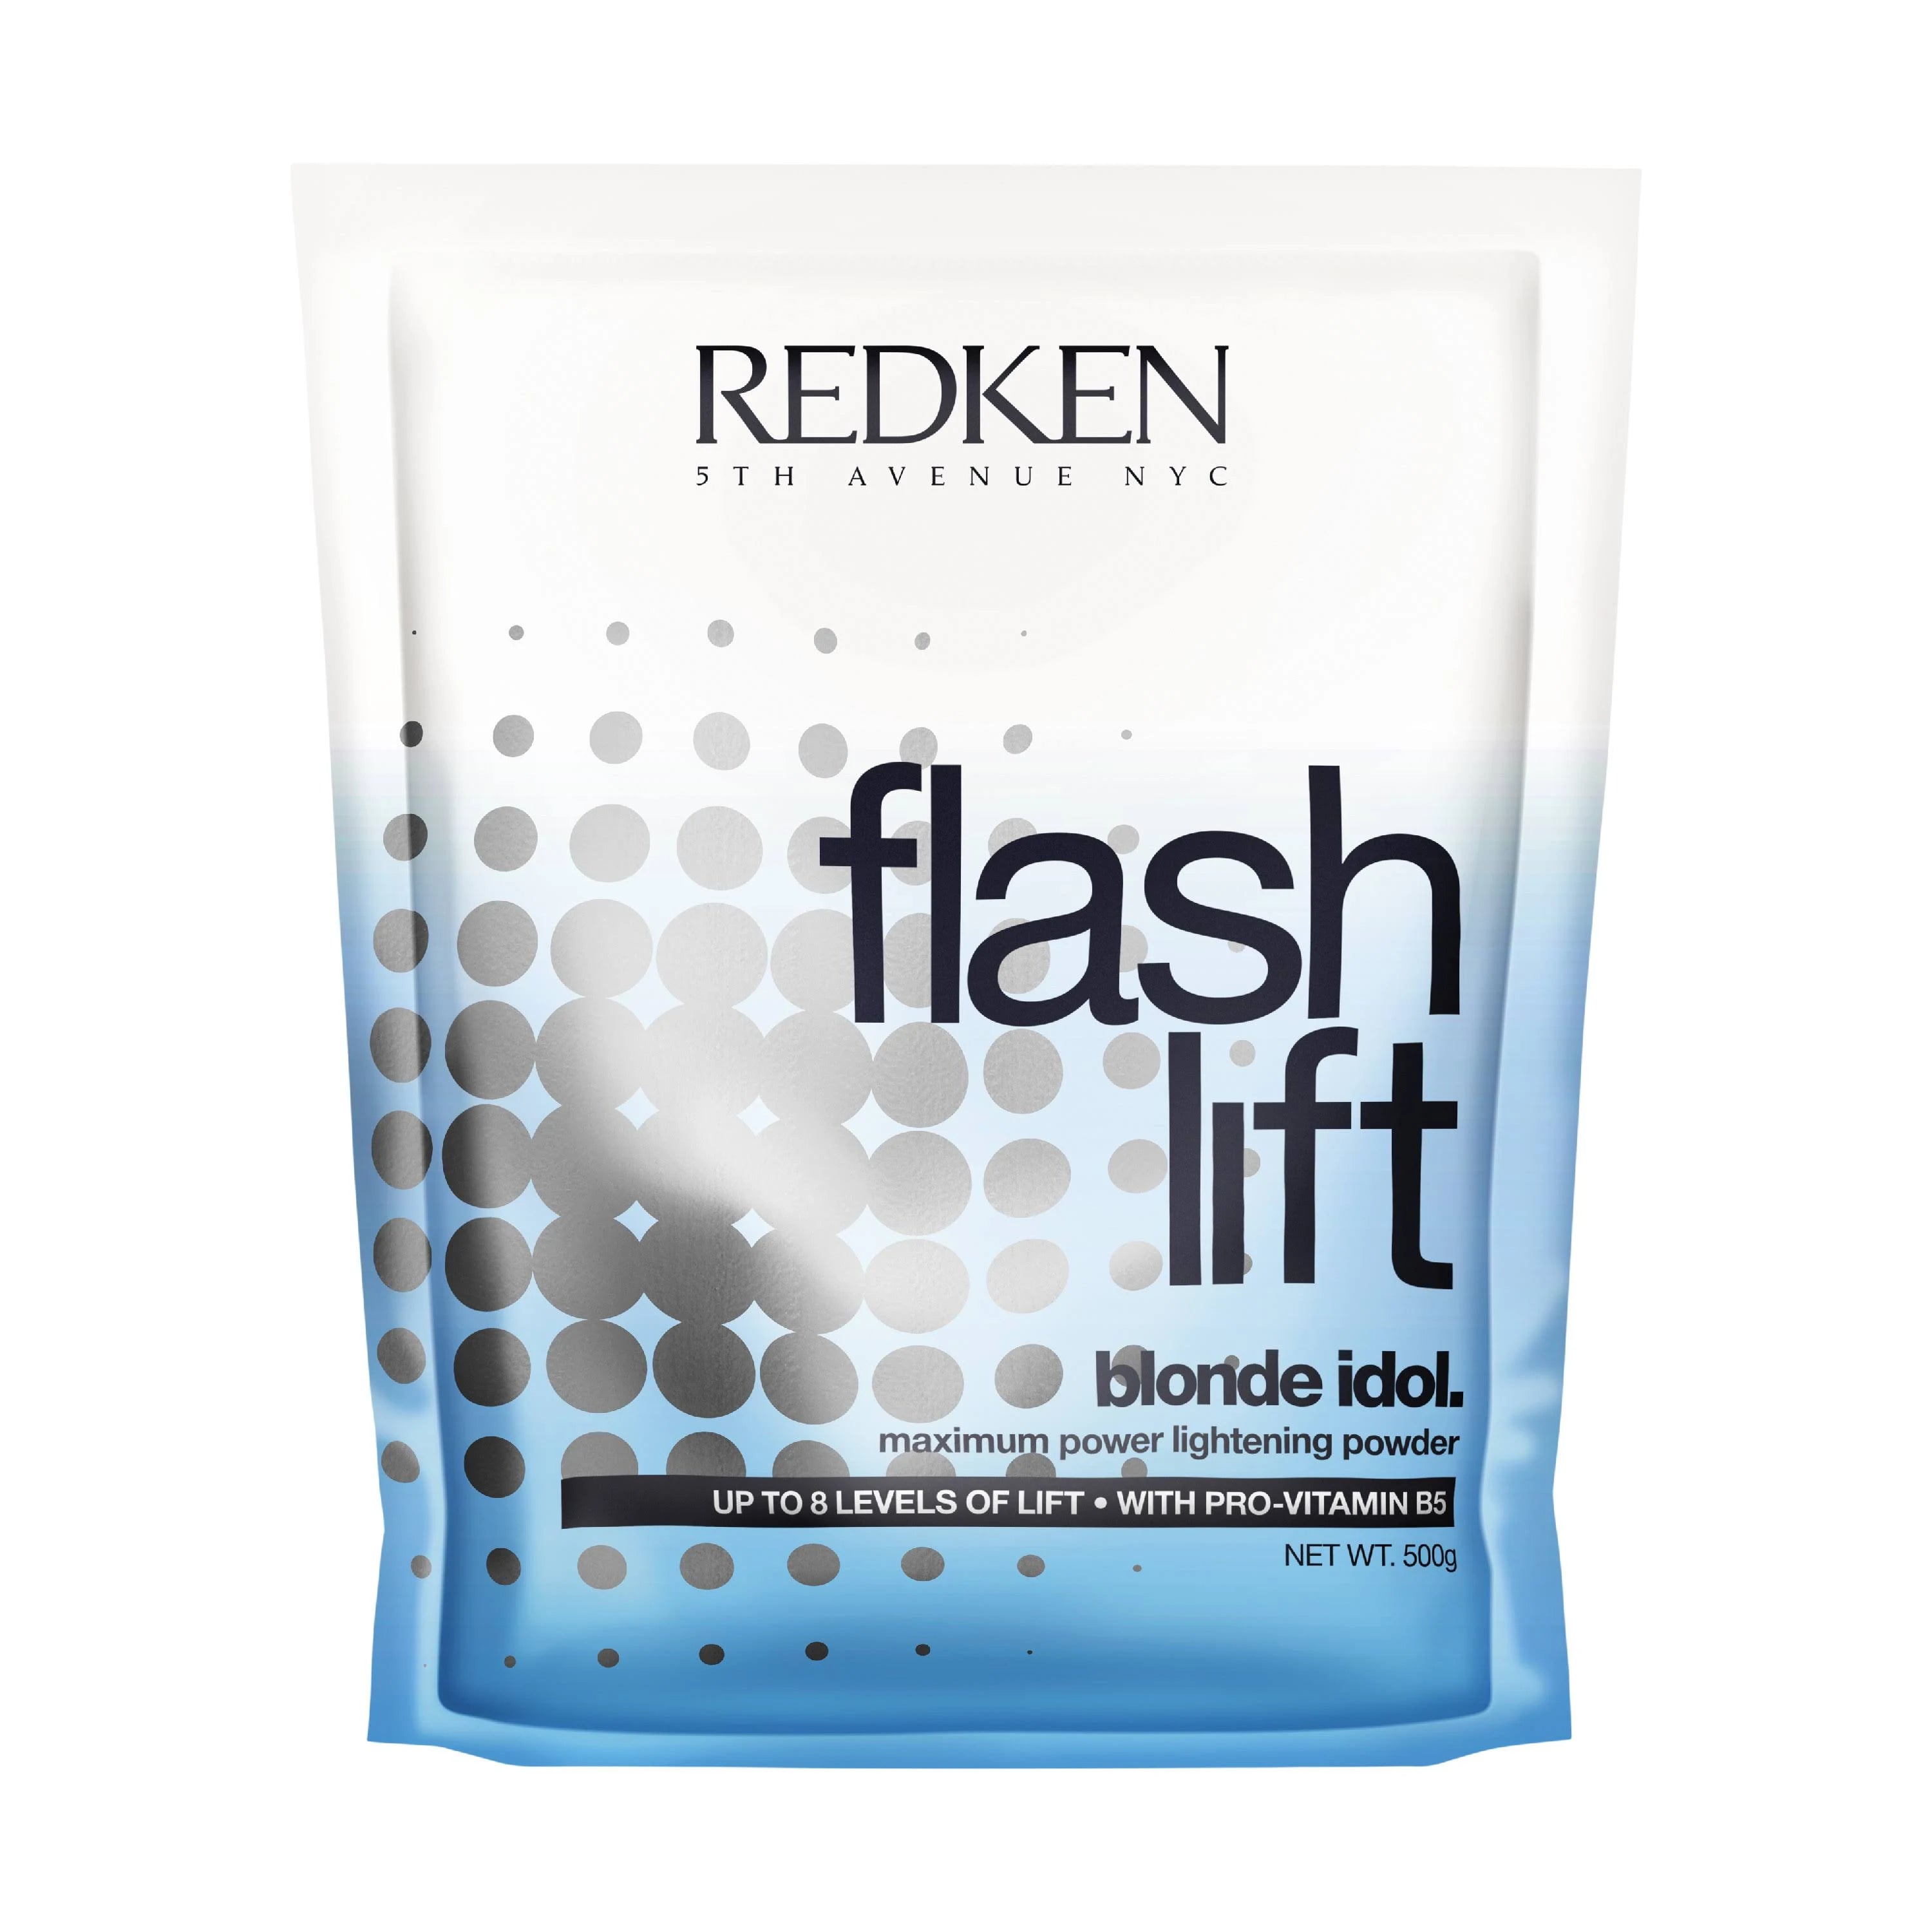 Redken® Flash Lift Blonde Idol